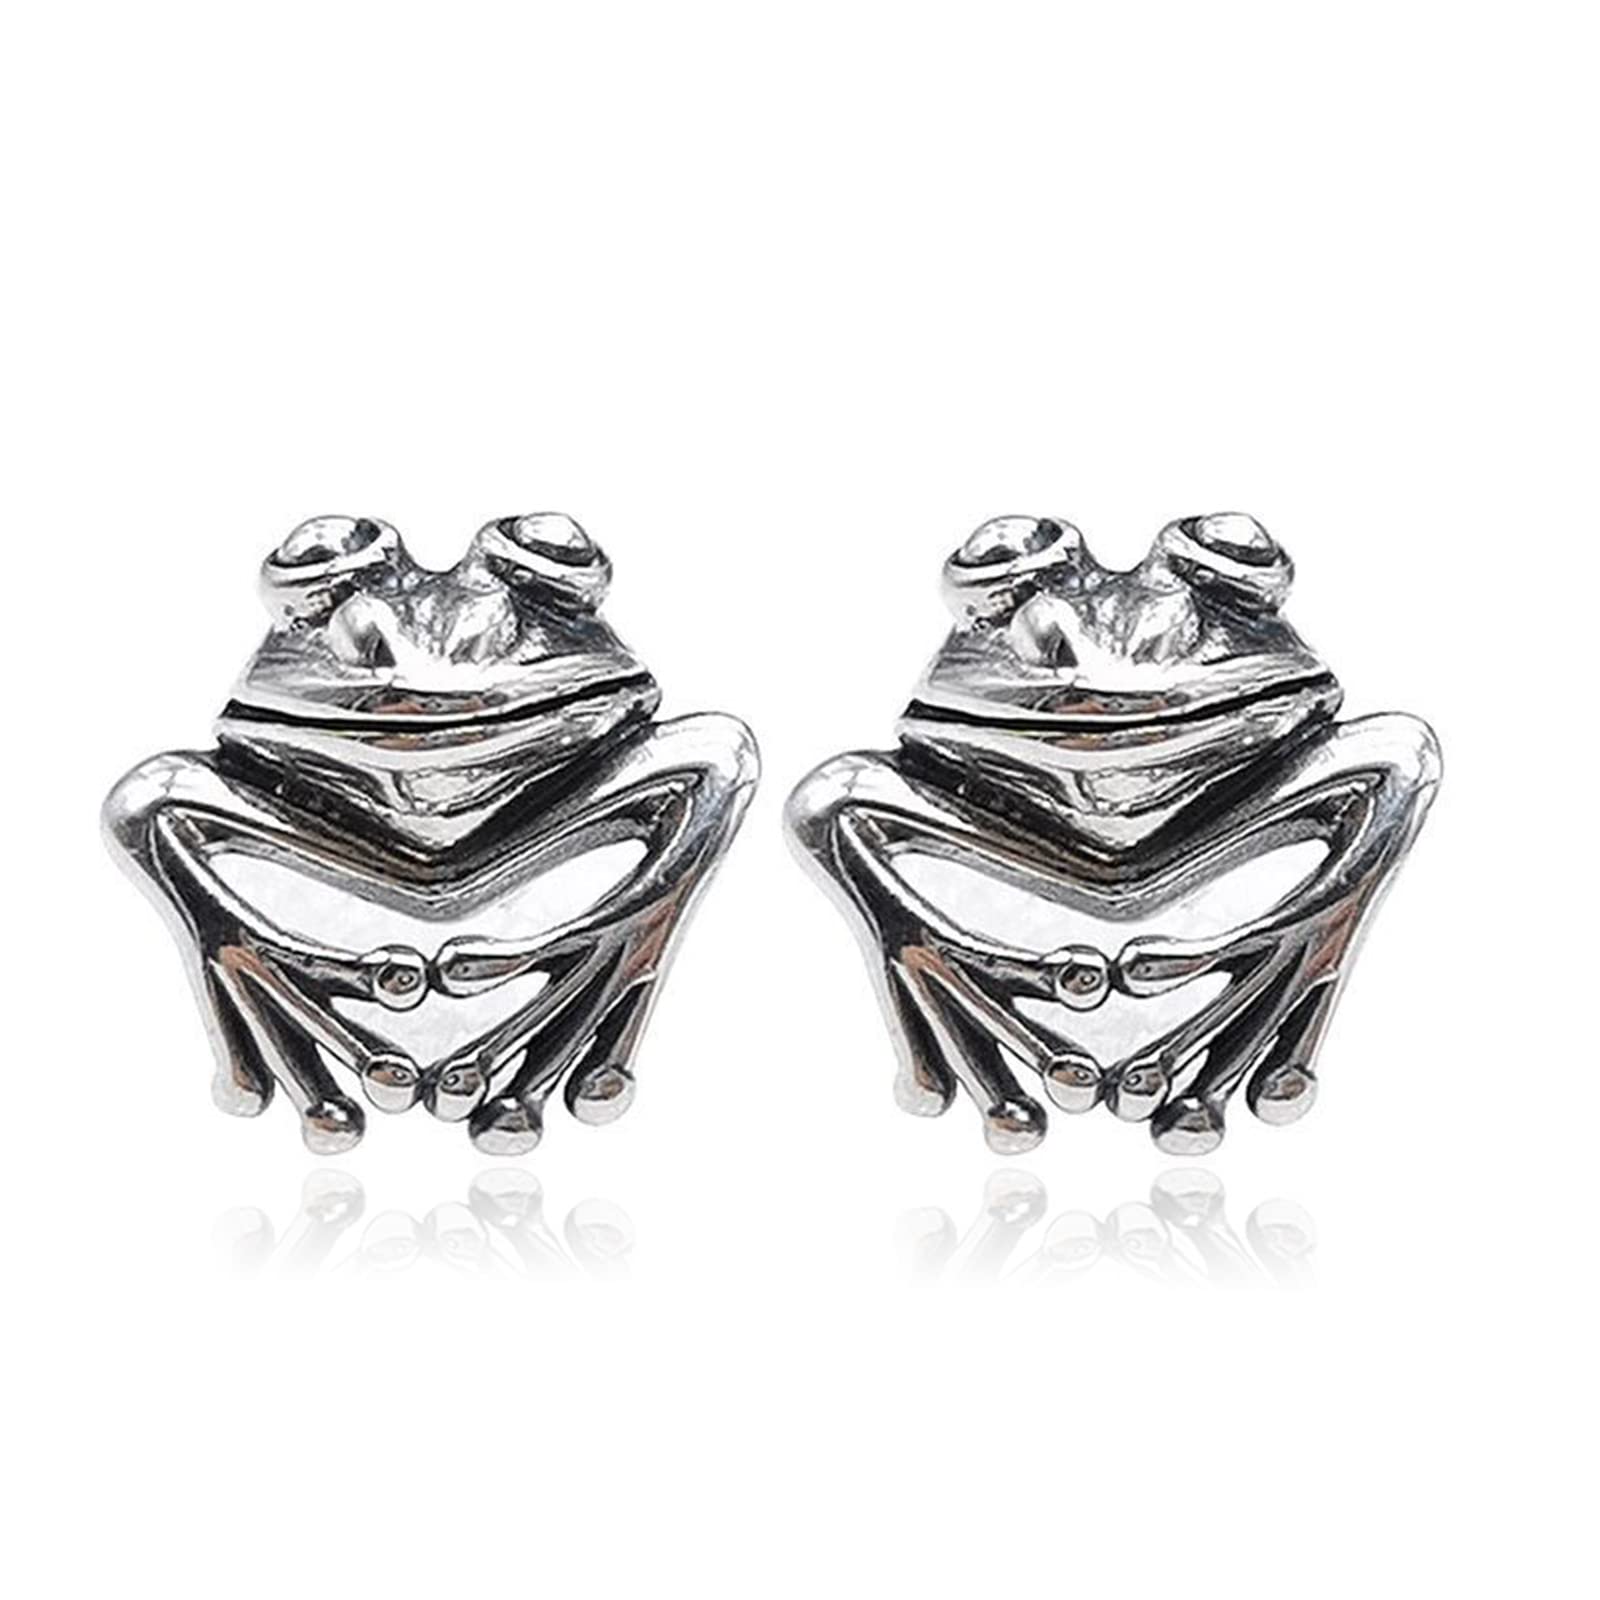 Frodete Silver Frog Earrings for Women Vintage Frogs Shaped Stud Earrings Cute Animal Earrings for Teens Girls Frog Stuff Jewelry Gifts